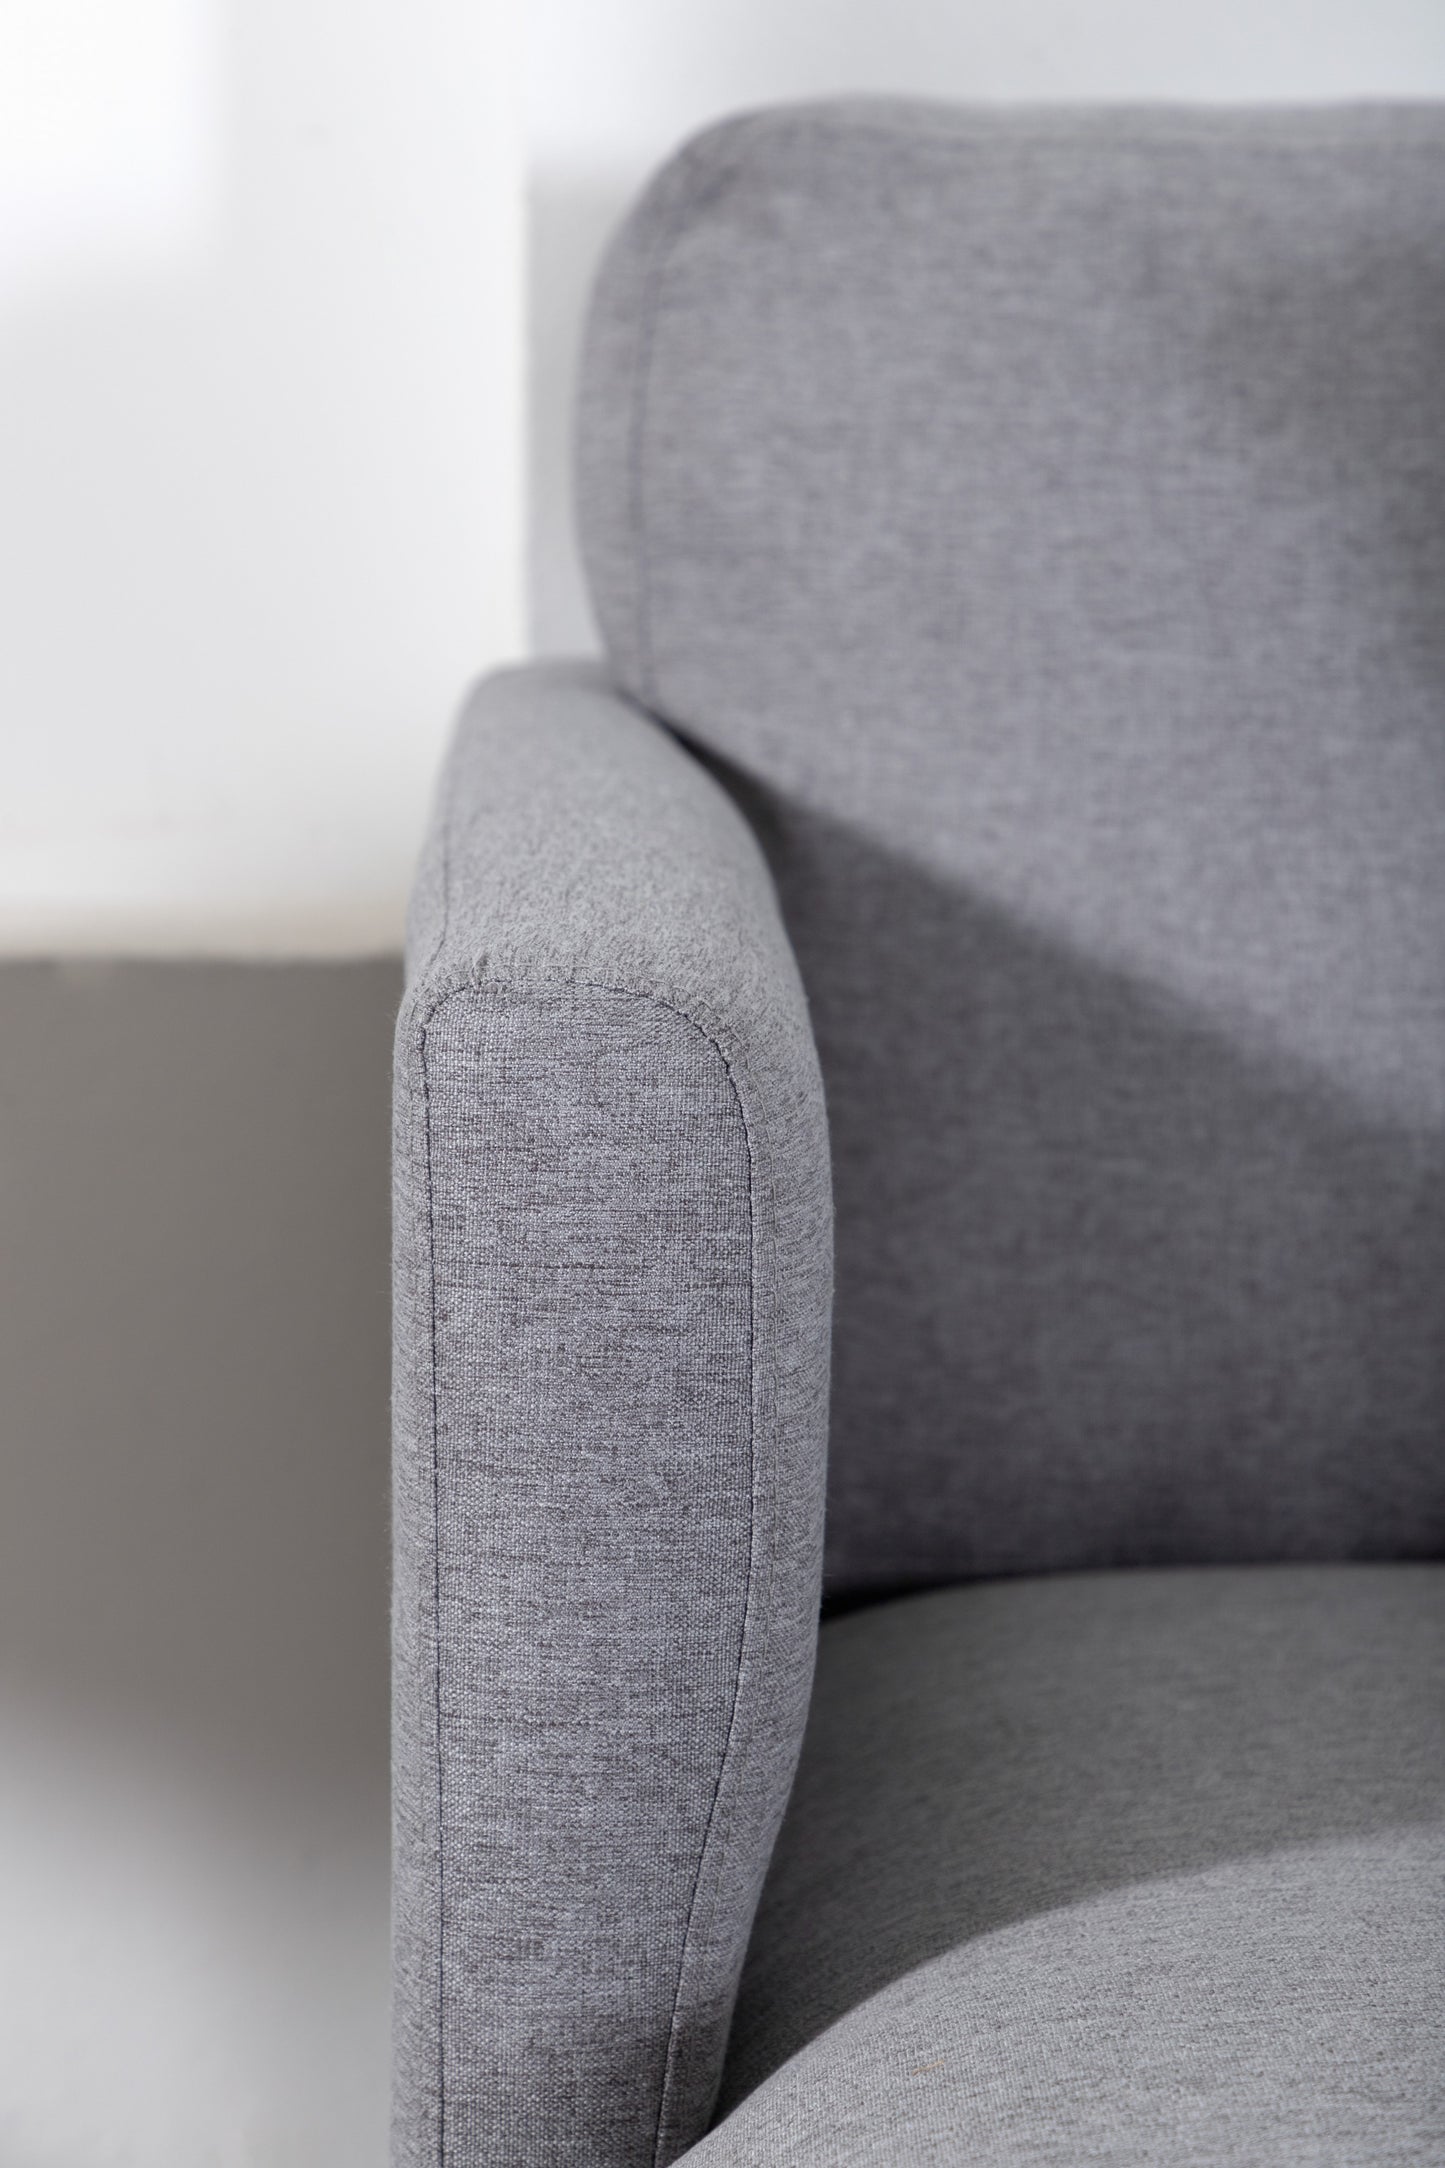 Venture-Design | Zoom U-Sofa - Schwarz / Stahlgrauer Stoff